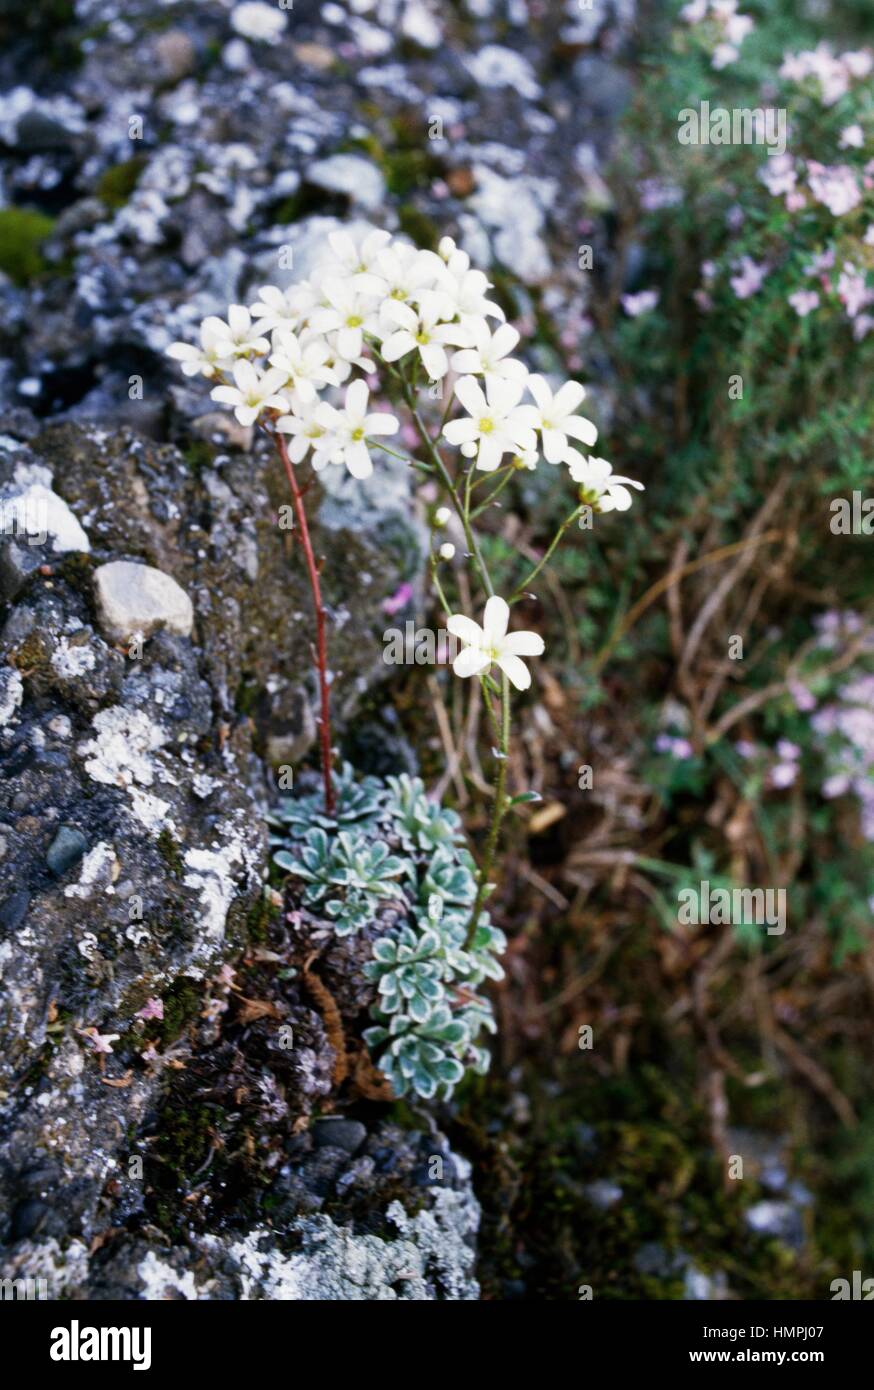 Saxifrage (Saxifraga cochlearis), Saxifragaceae. Stock Photo